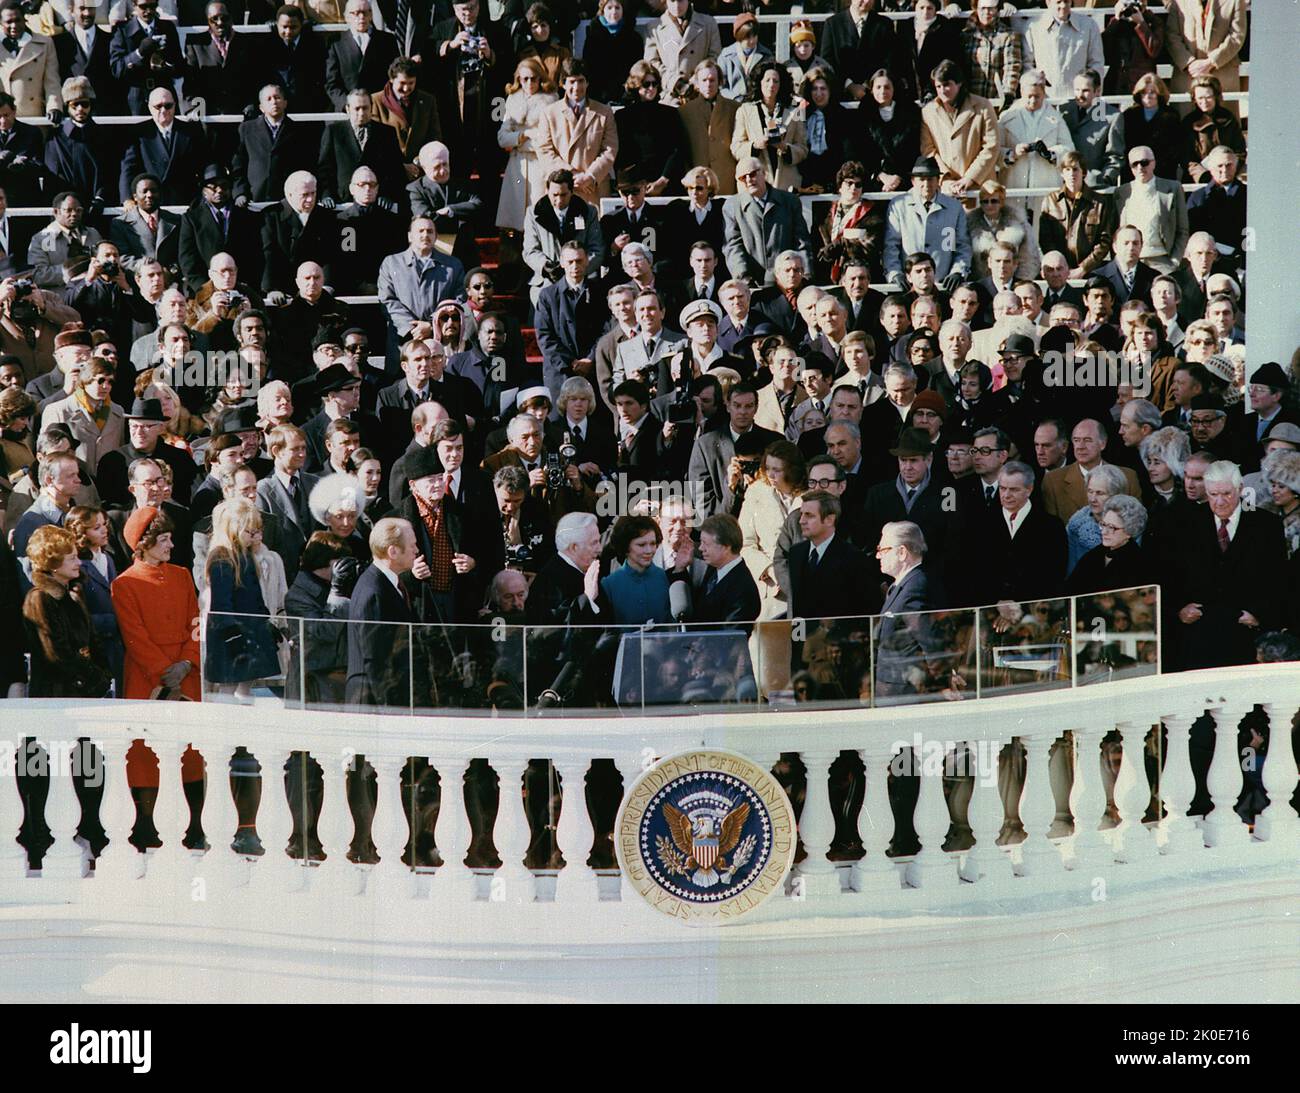 L'inauguration de Jimmy carter en tant que président des États-Unis en 39th a eu lieu jeudi, 20 janvier 1977, au Portique est du Capitole des États-Unis à Washington D.C., le juge en chef Warren E. Burger a prêté le serment présidentiel de sa présidence à carter. Banque D'Images